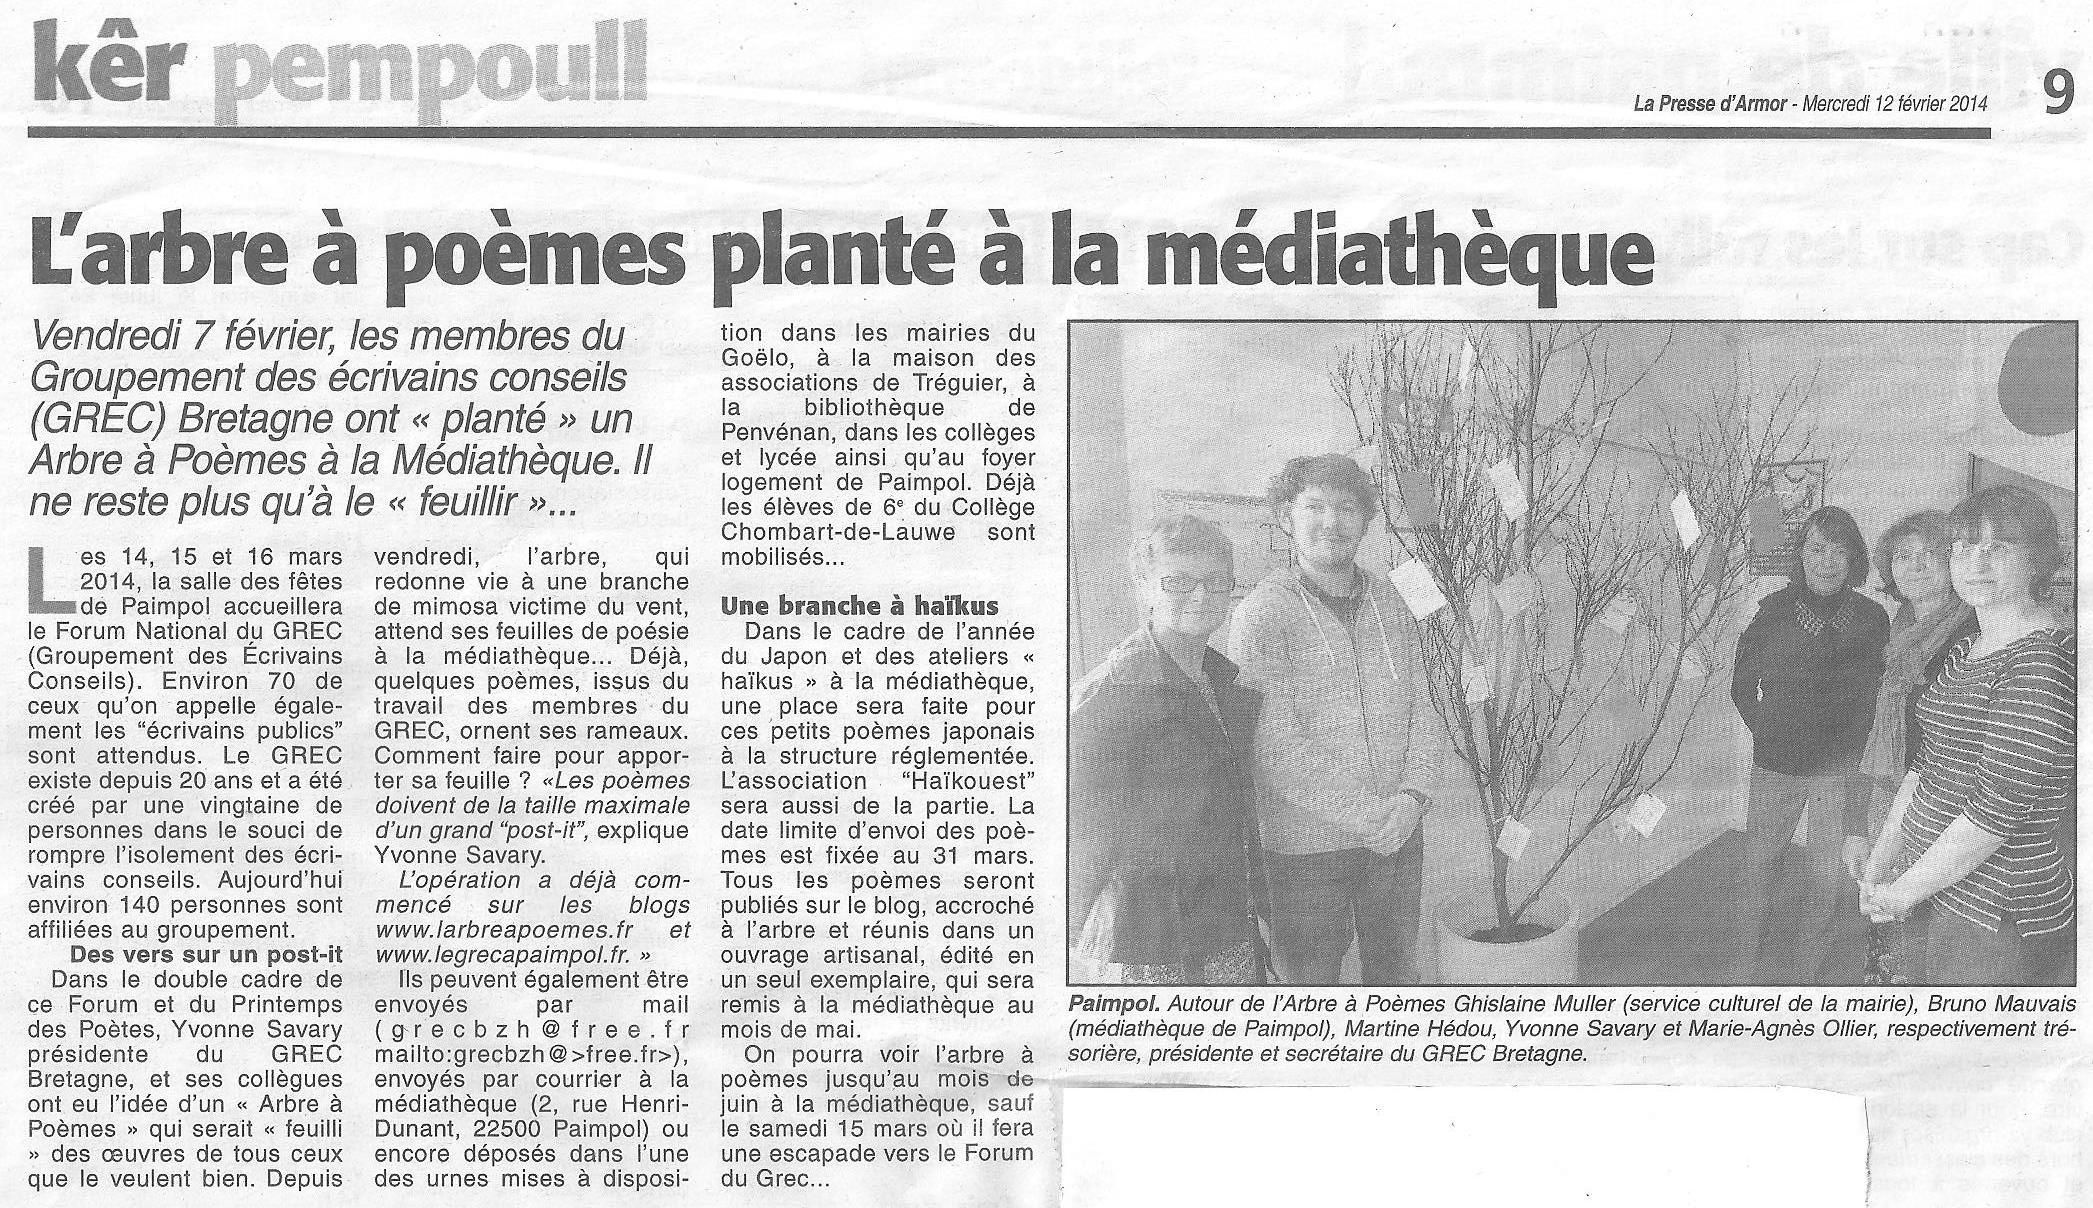 La Presse d'Armor, L'arbre à poèmes planté à la médiathèque (12 février 2014)